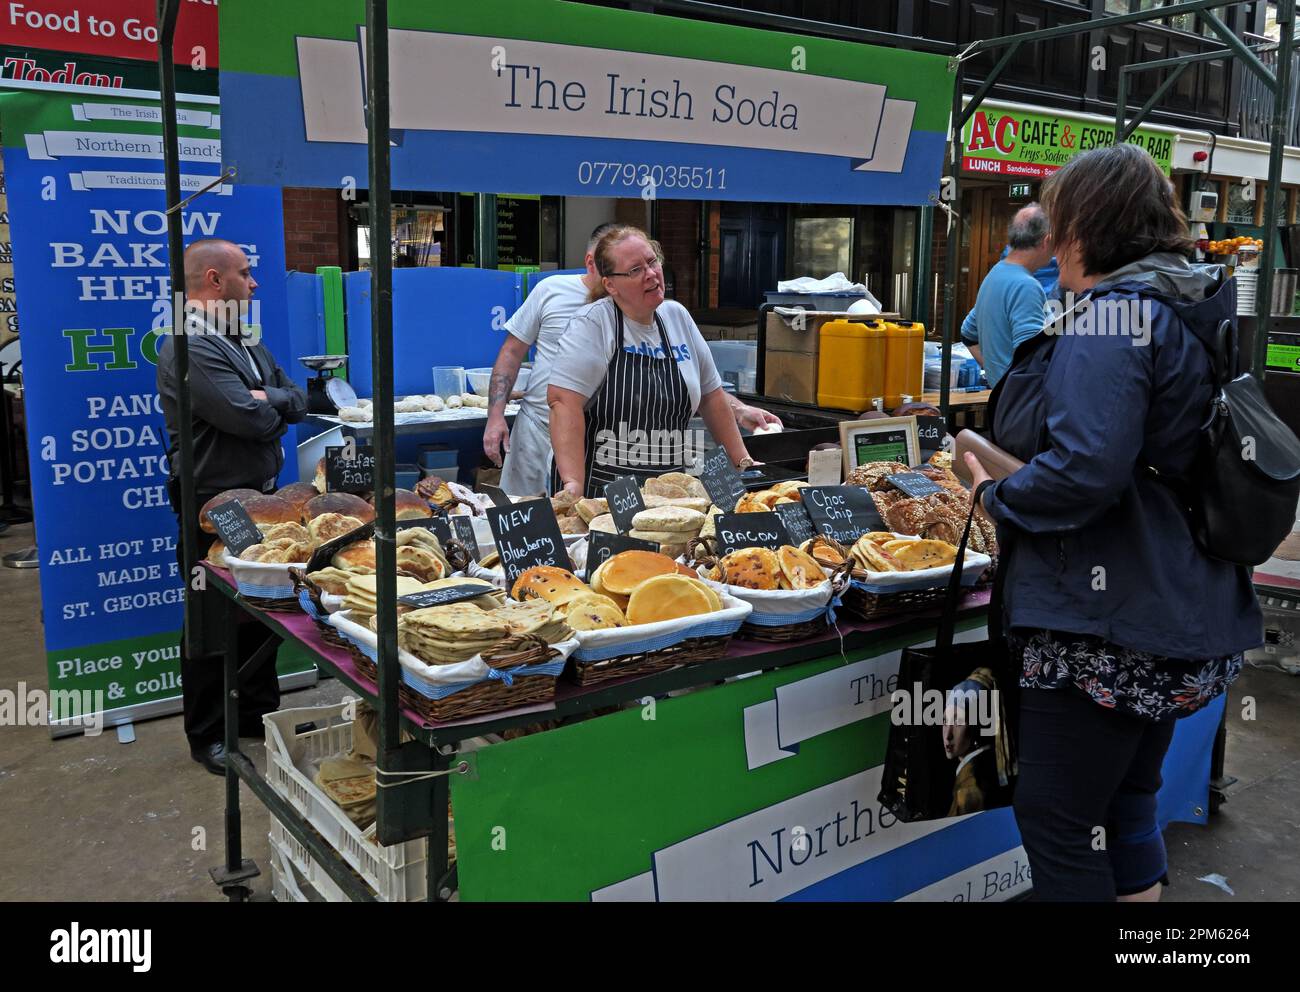 La bancarella del pane della soda irlandese - mercato di St George, East Bridge St, Belfast, Antrim, Irlanda del Nord, REGNO UNITO, BT1 3NQ Foto Stock